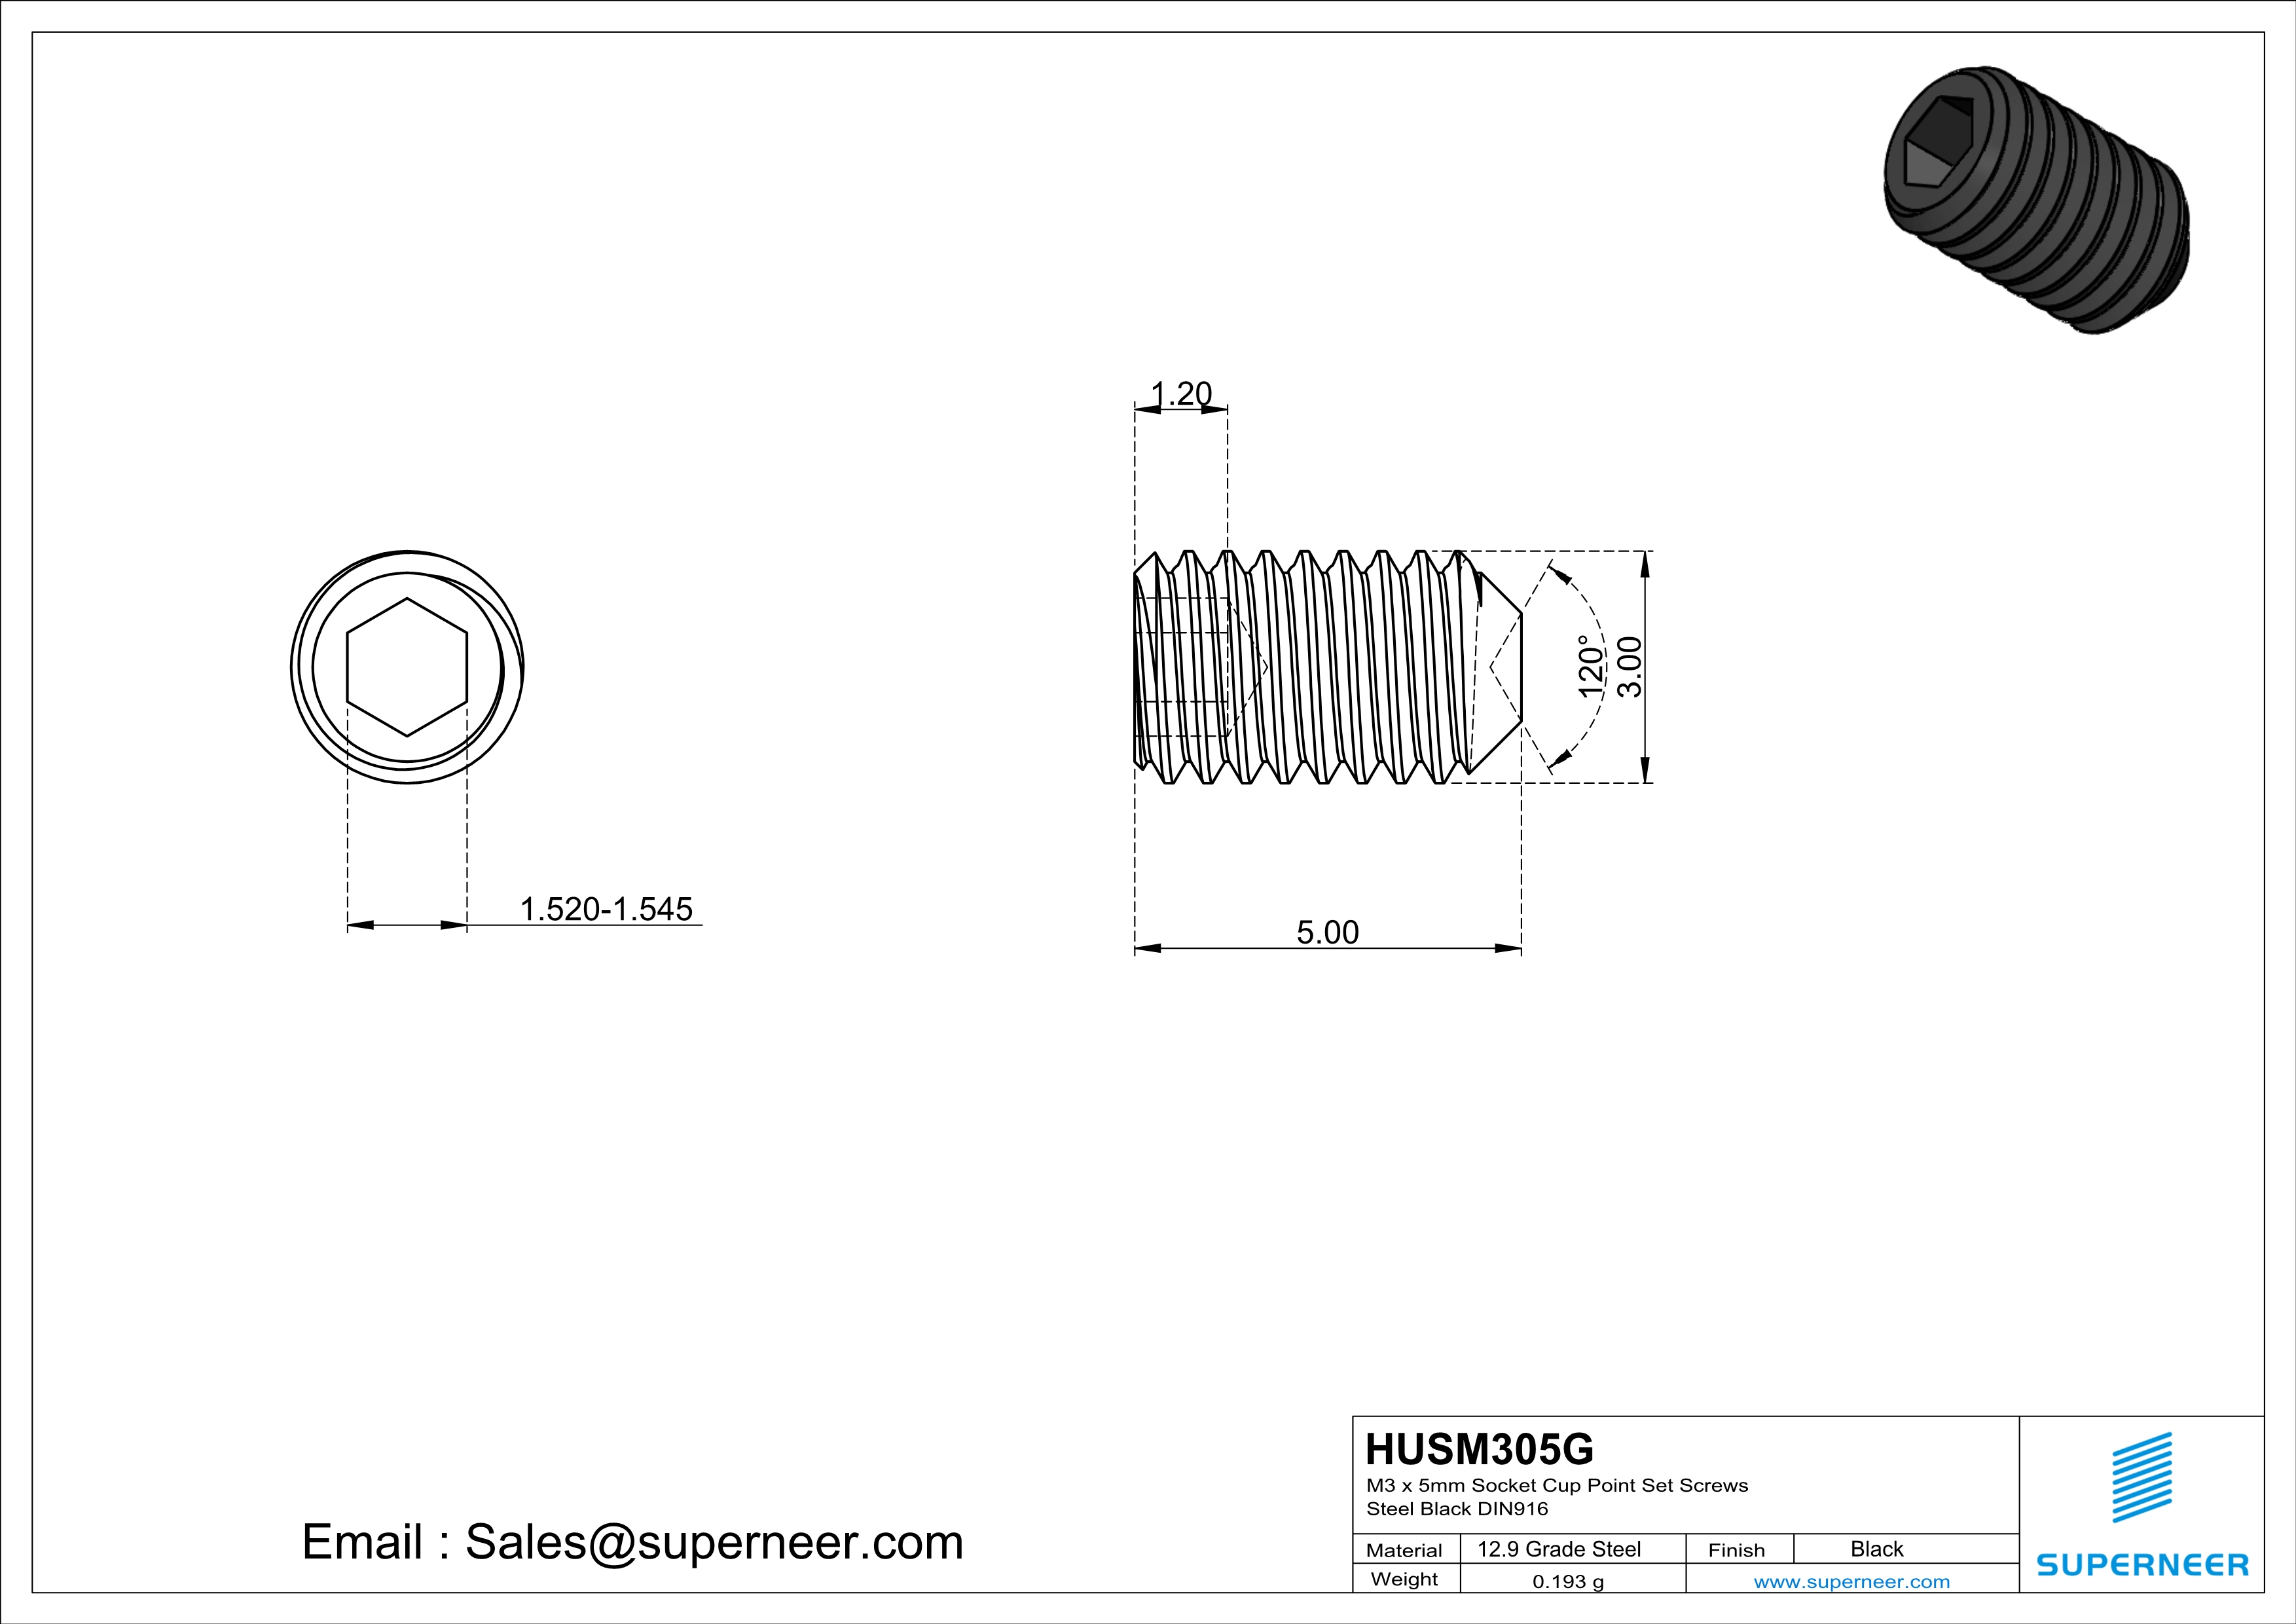 M3 x 5mm Socket Cup Point Set Screws 12.9 Carbon Steel Black DIN916